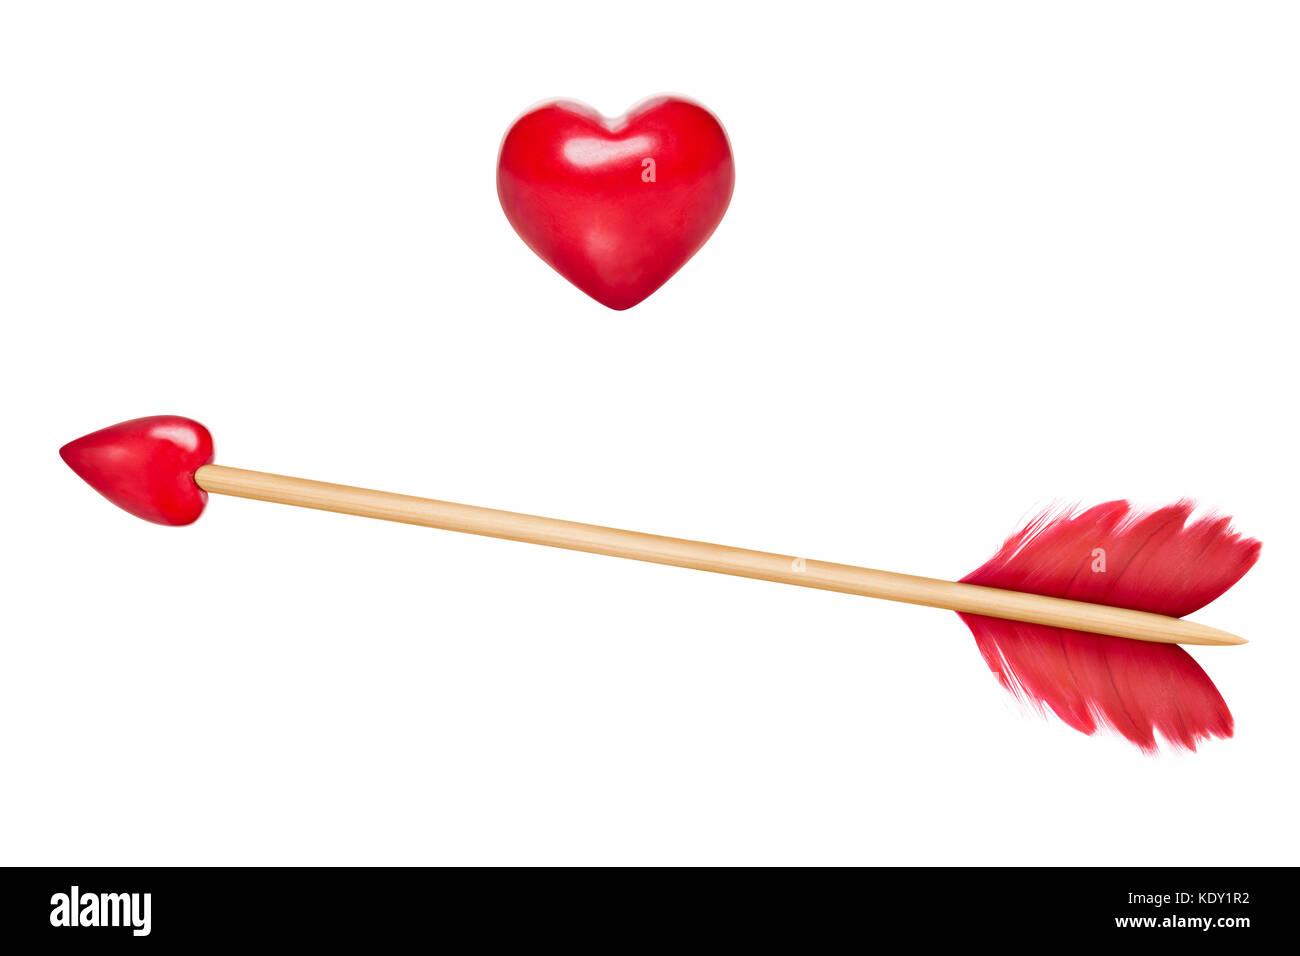 Cupido flecha con plumas rojas y una flecha en la forma de un corazón rojo,  el palo de madera ,corazón de madera también incluyó a los fines del diseño  Fotografía de stock -